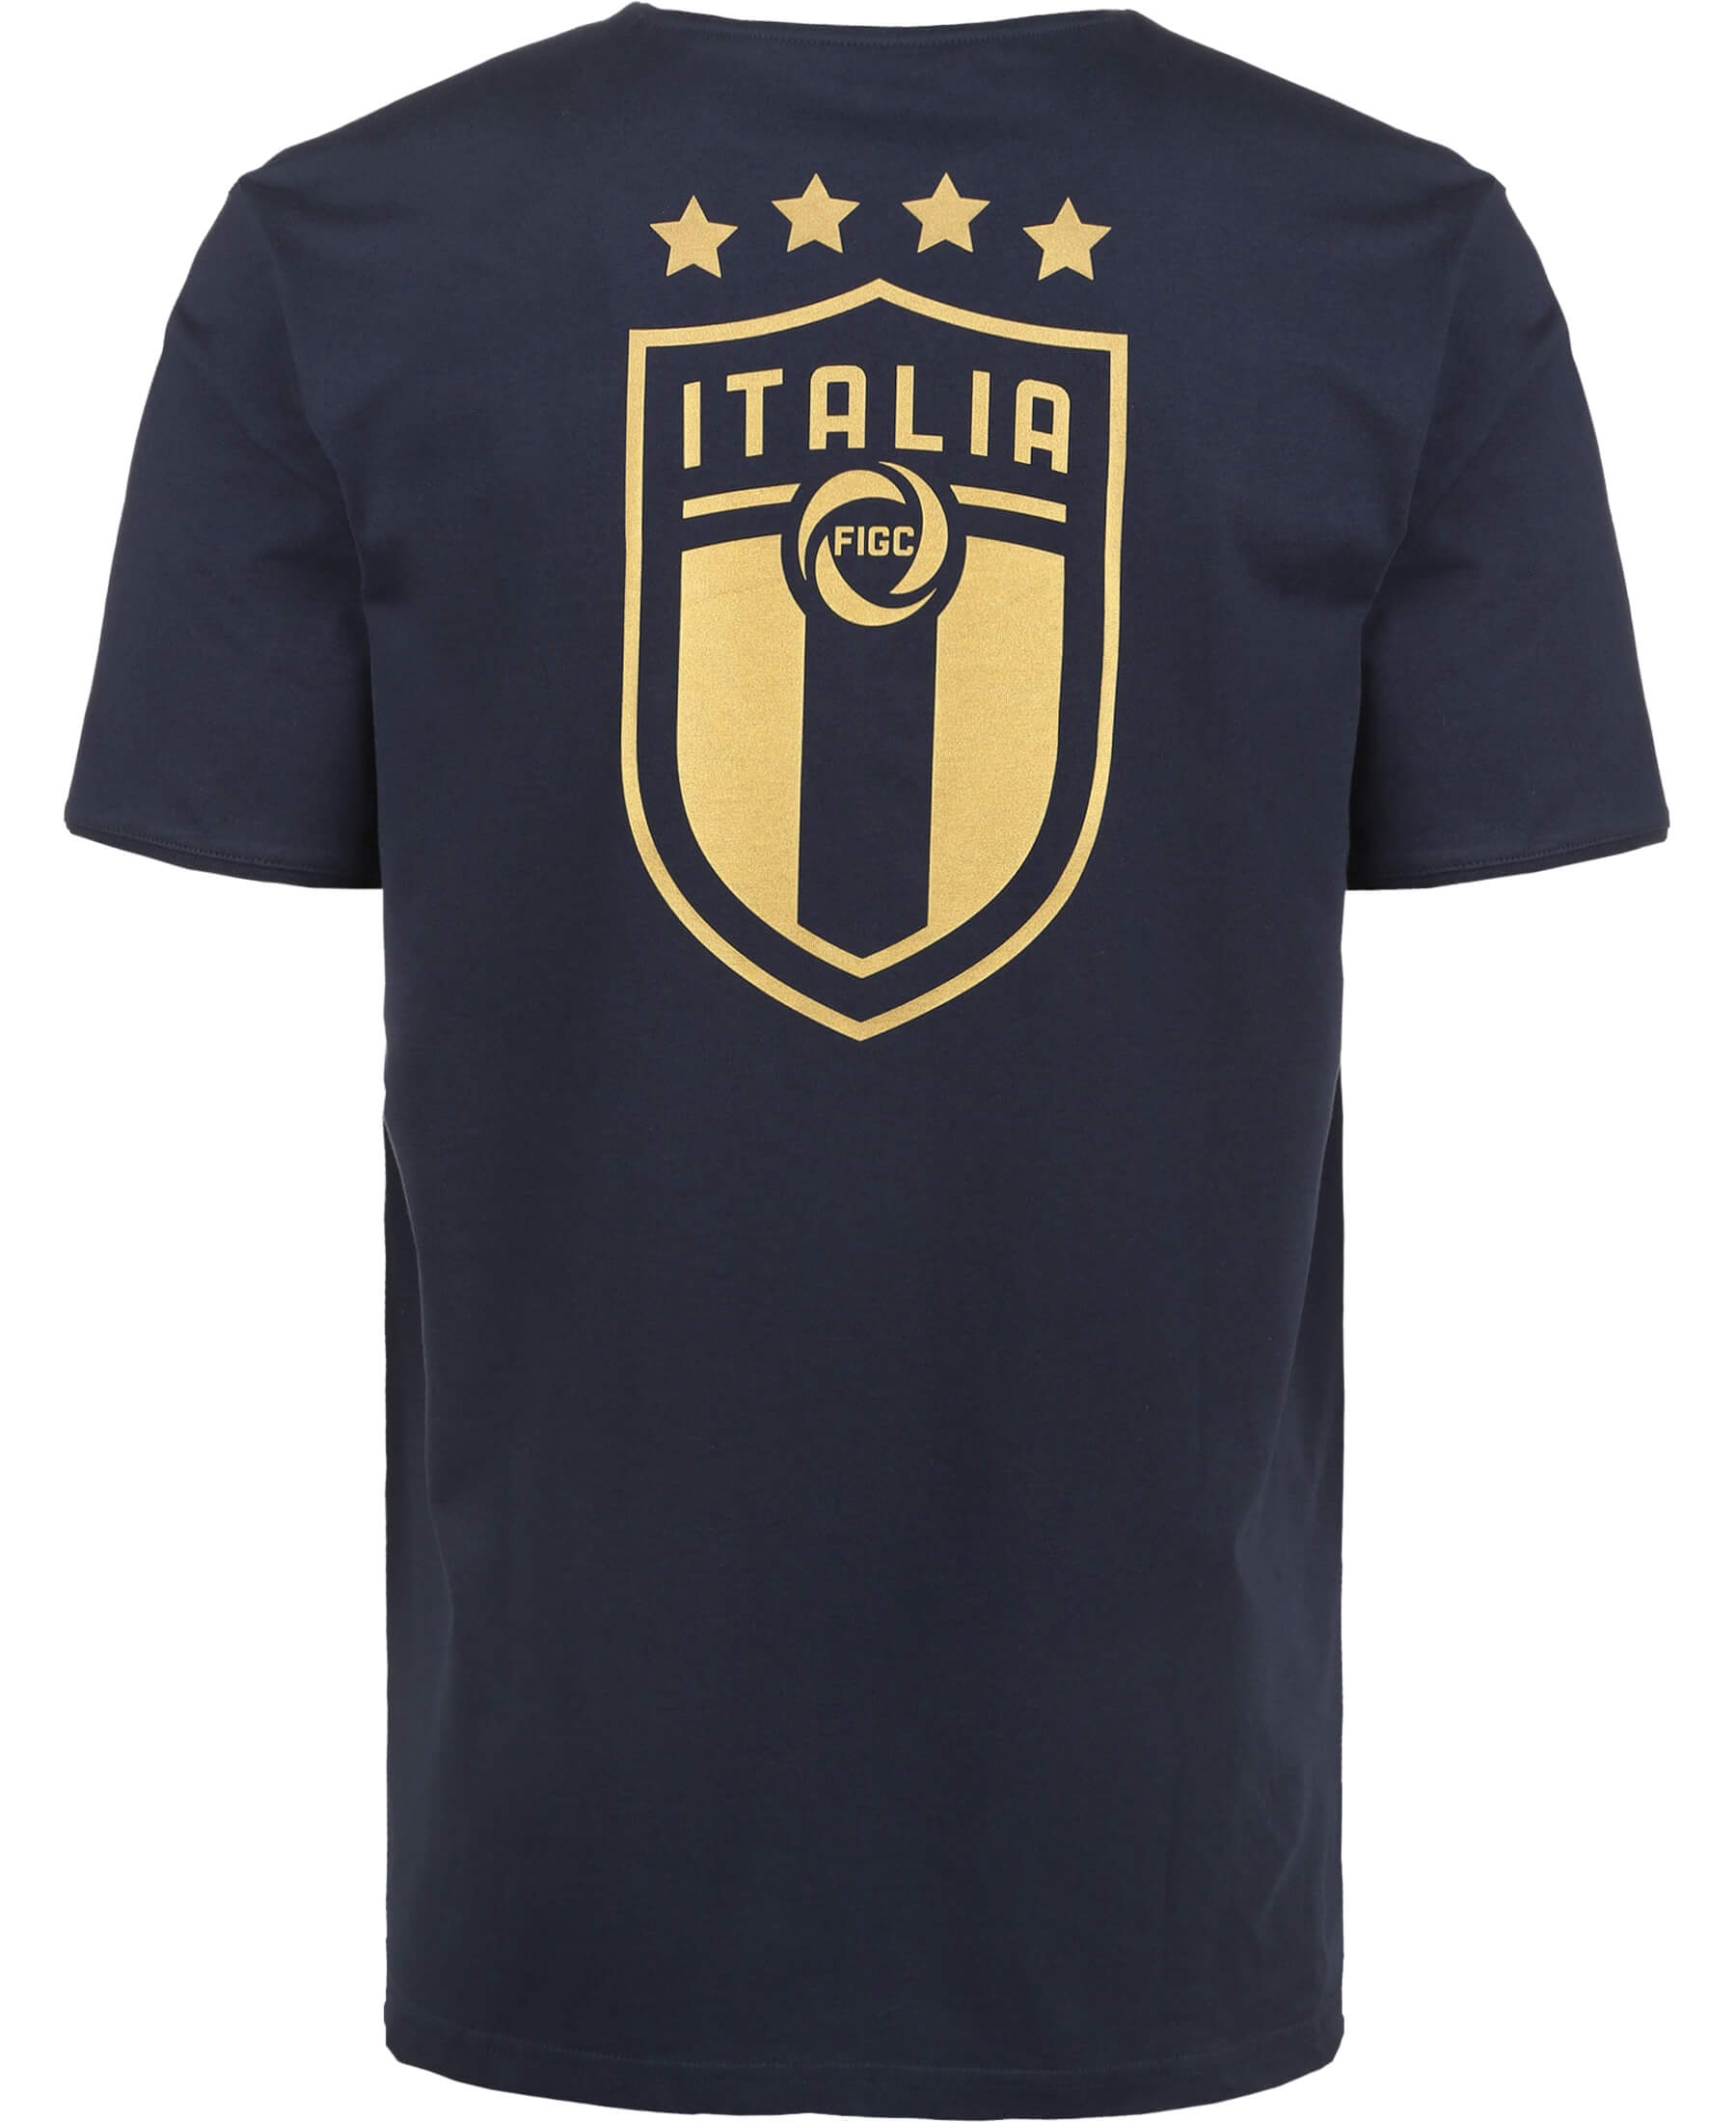 PUMA Italien FIGC T-Shirt - Offizielles Tailored for Sports T-Shirt der italienischen Nationalmannschaft. Unterstützen Sie die Squadra Azzurra mit diesem hochwertigen und stilvollen T-Shirt. Perfekt für sportliche Aktivitäten oder einen lässigen Look. Jetzt im Onlineshop SHOP4TEAMSPORT erhältlich! Bestellen Sie noch heute und zeigen Sie Ihre Verbundenheit mit Italien.